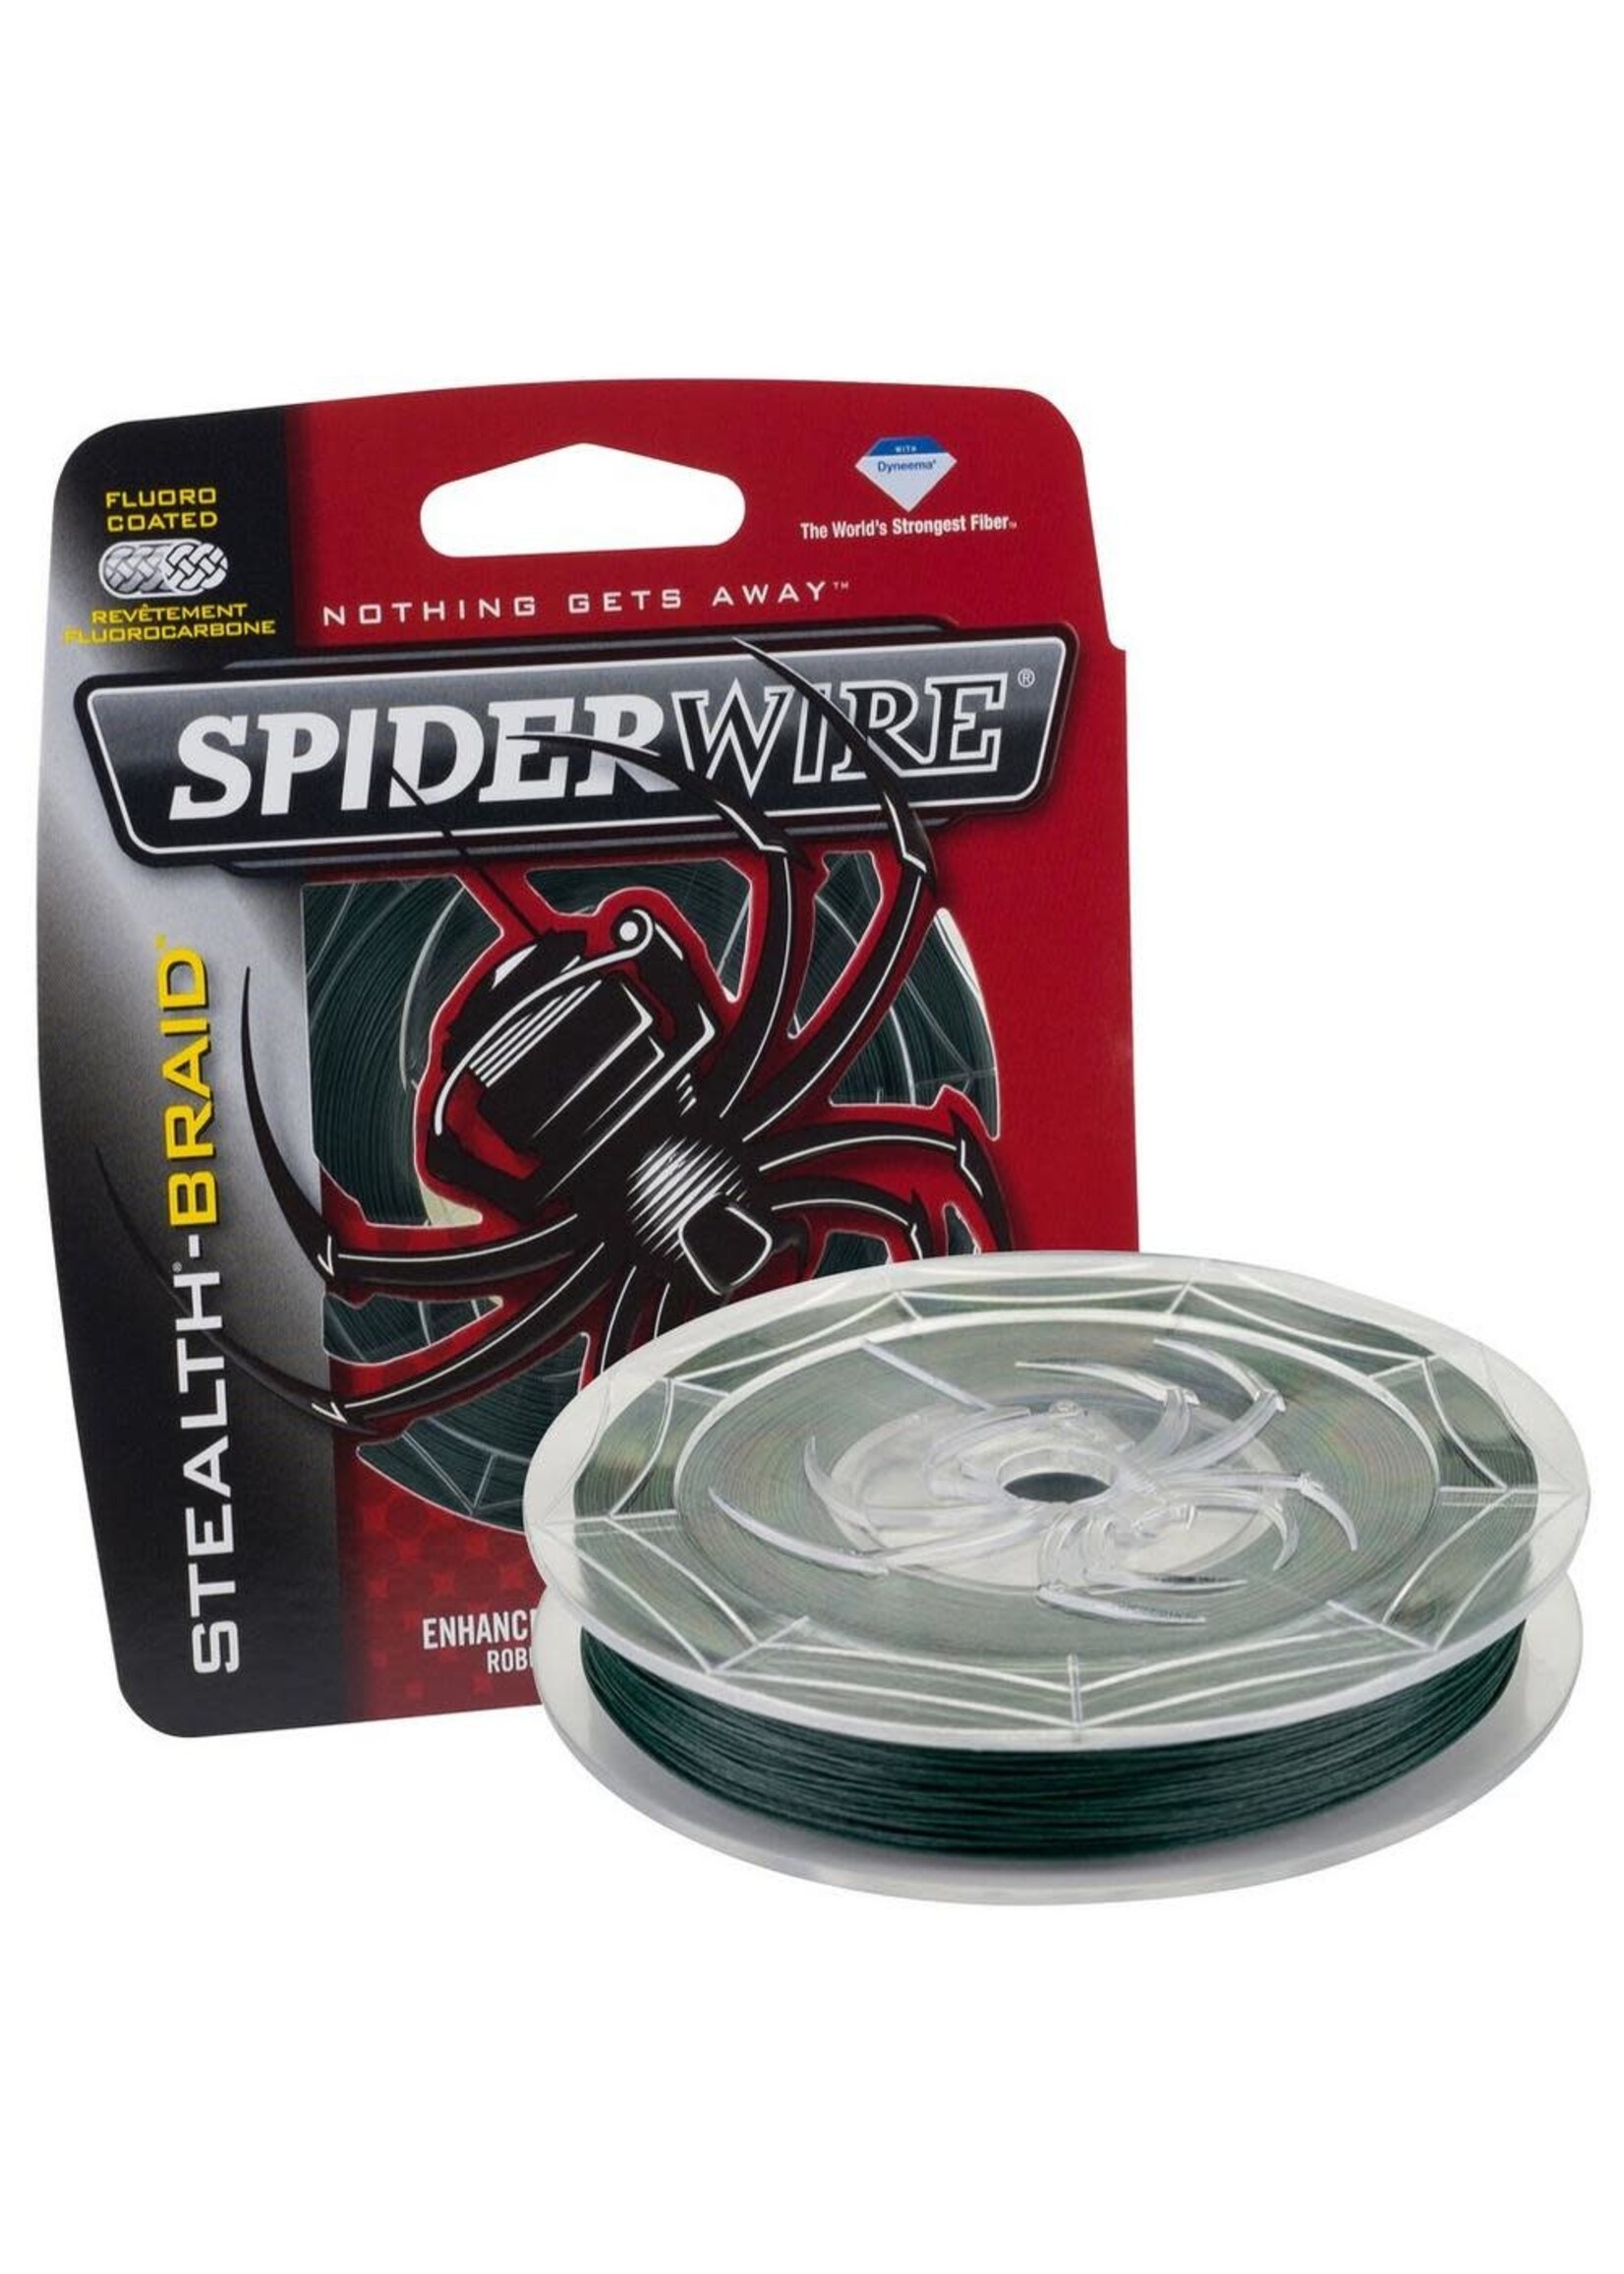 Spiderwire Spiderwire Stealth Braid 125 yards